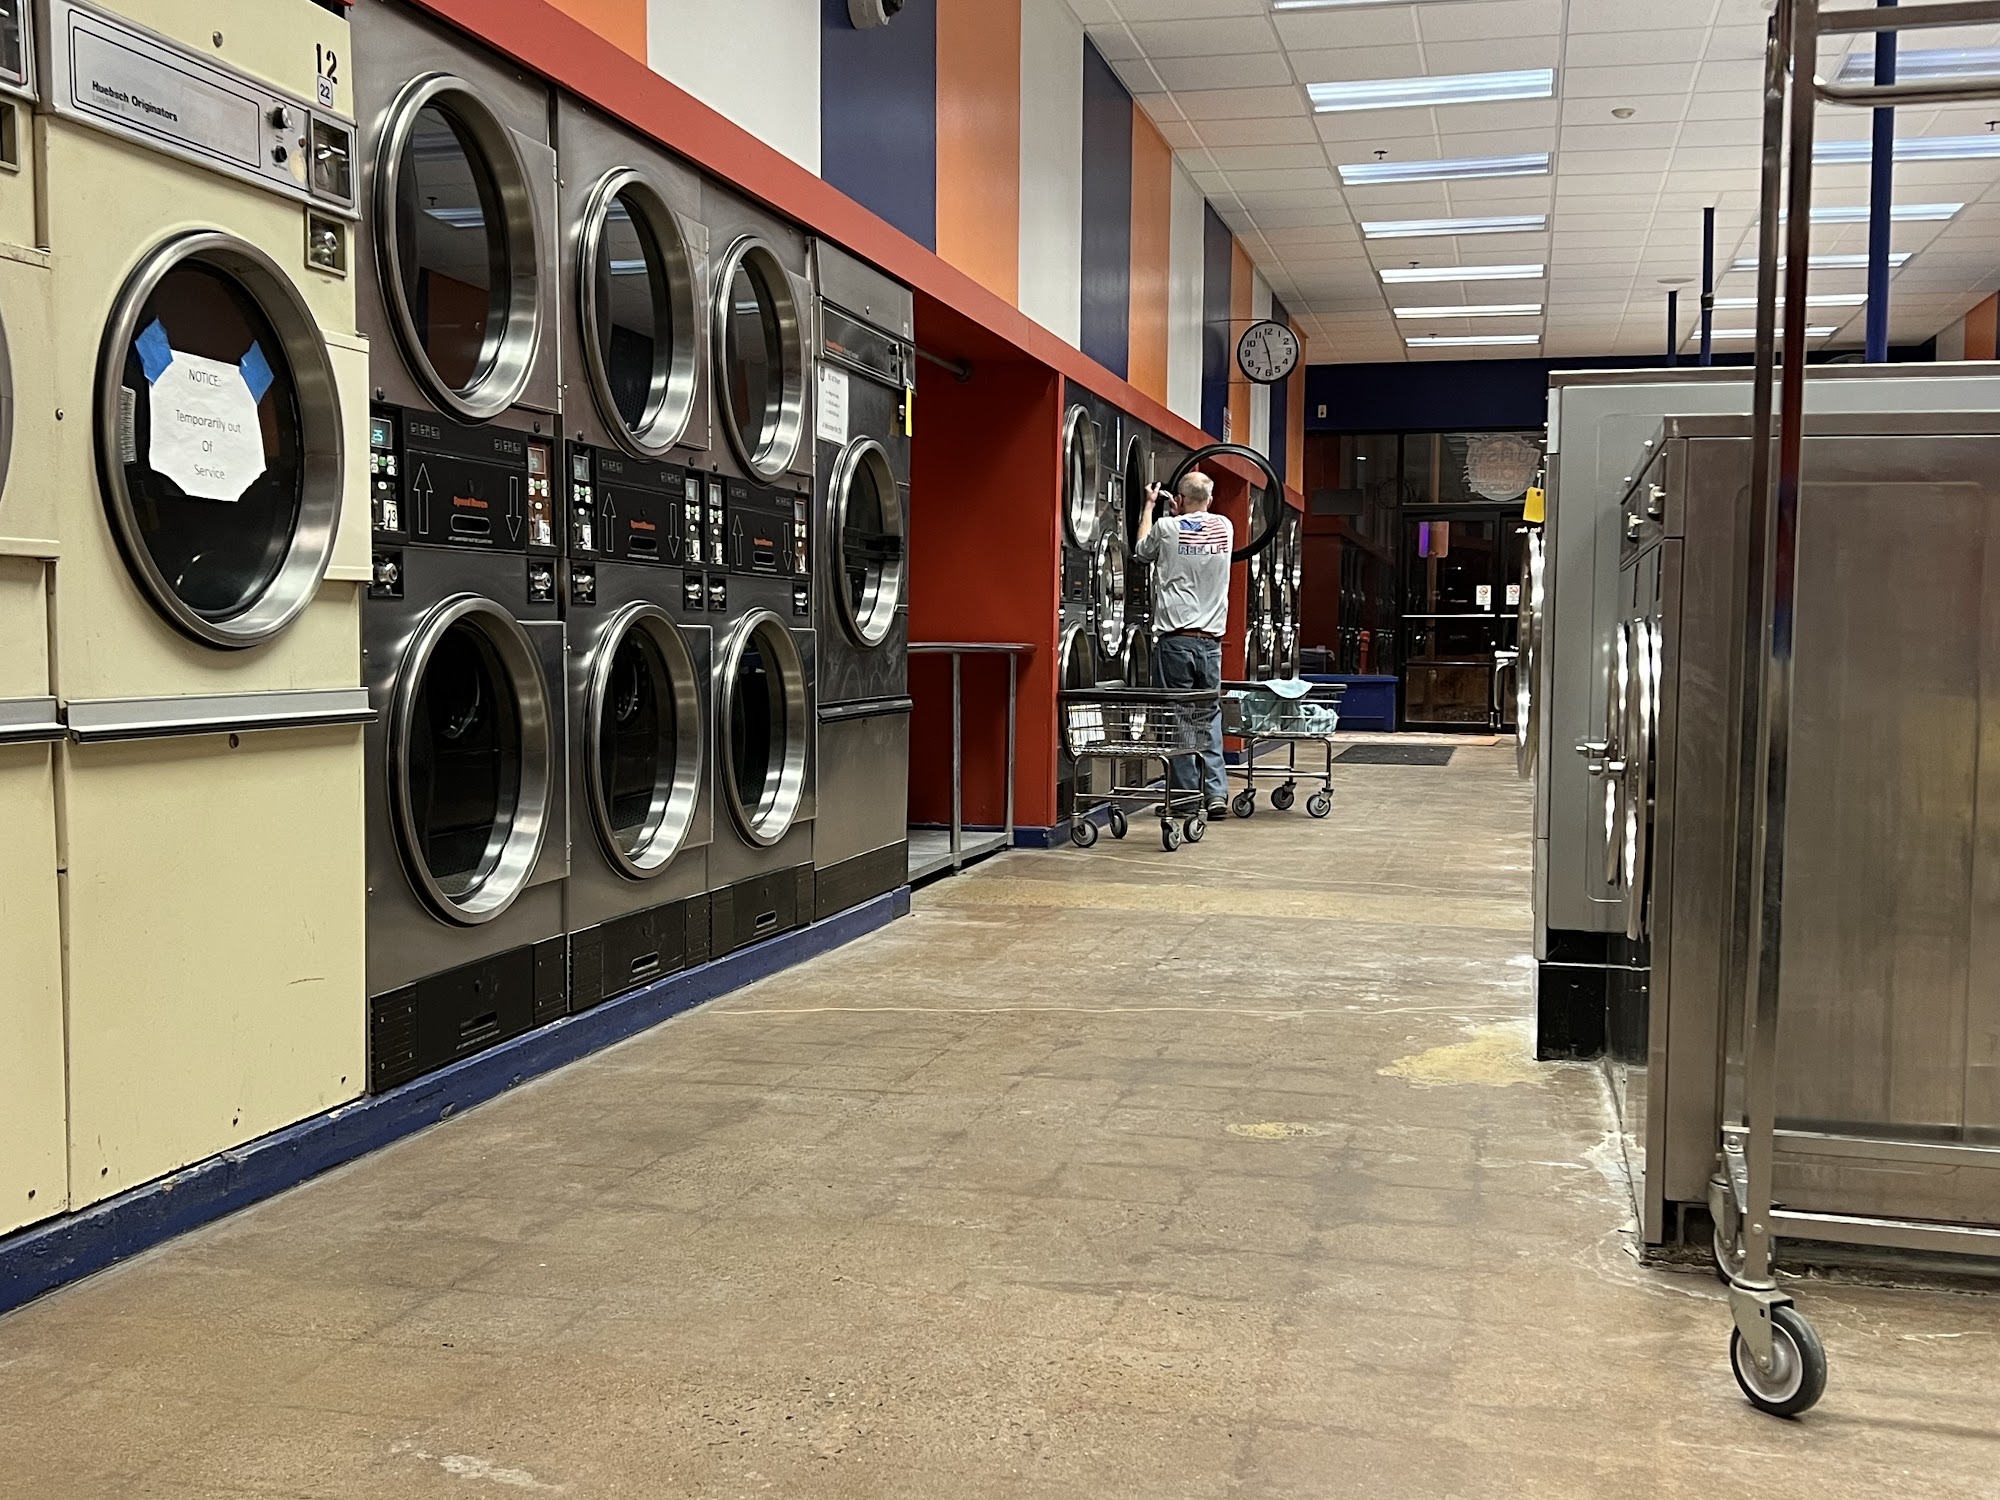 Wash & Dri Laundromat